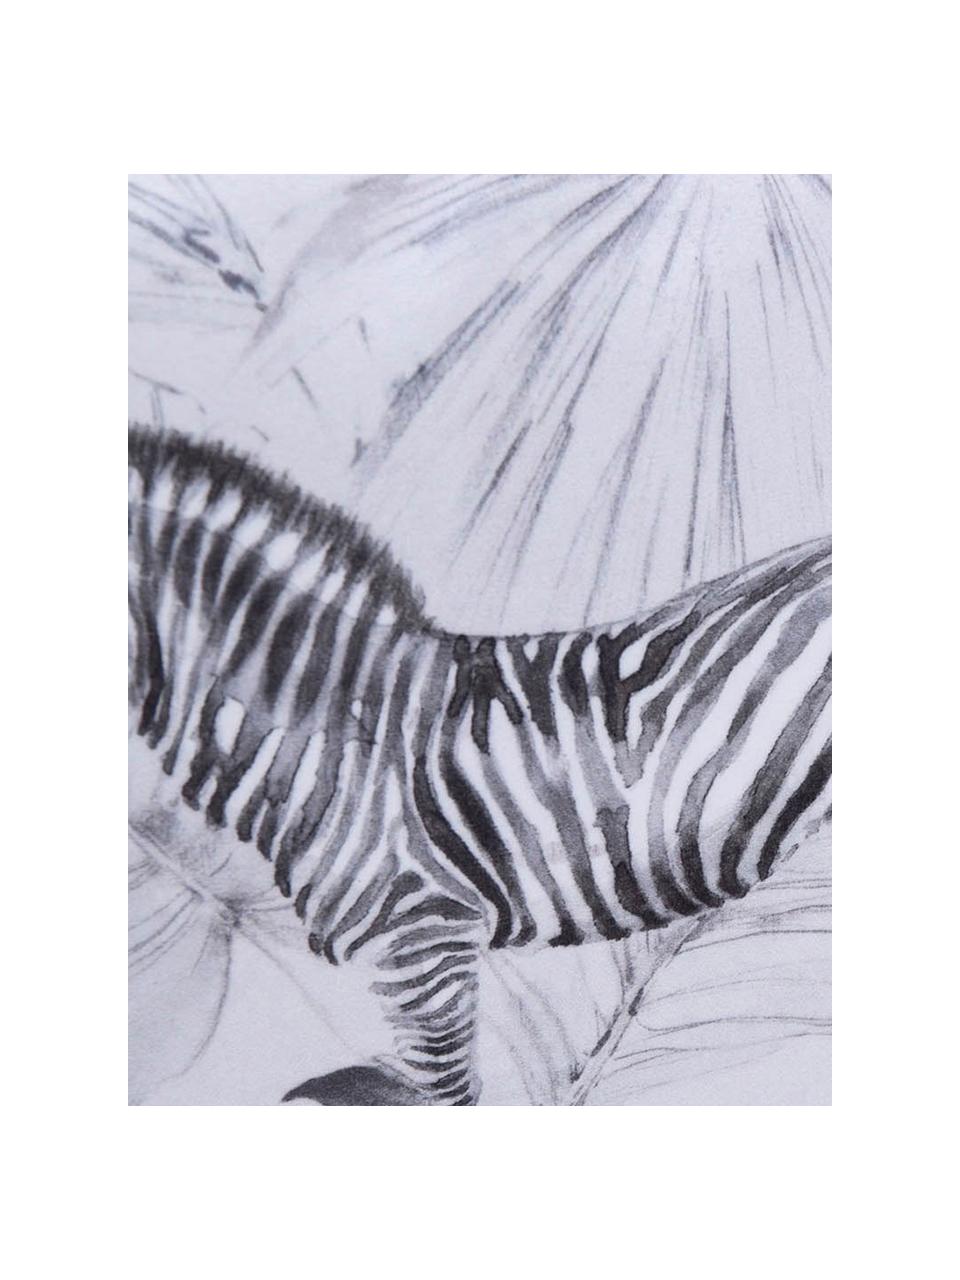 Samt-Kissen Zebra, mit Inlett, 100% Polyestersamt, Weiß, Schwarz, 30 x 45 cm